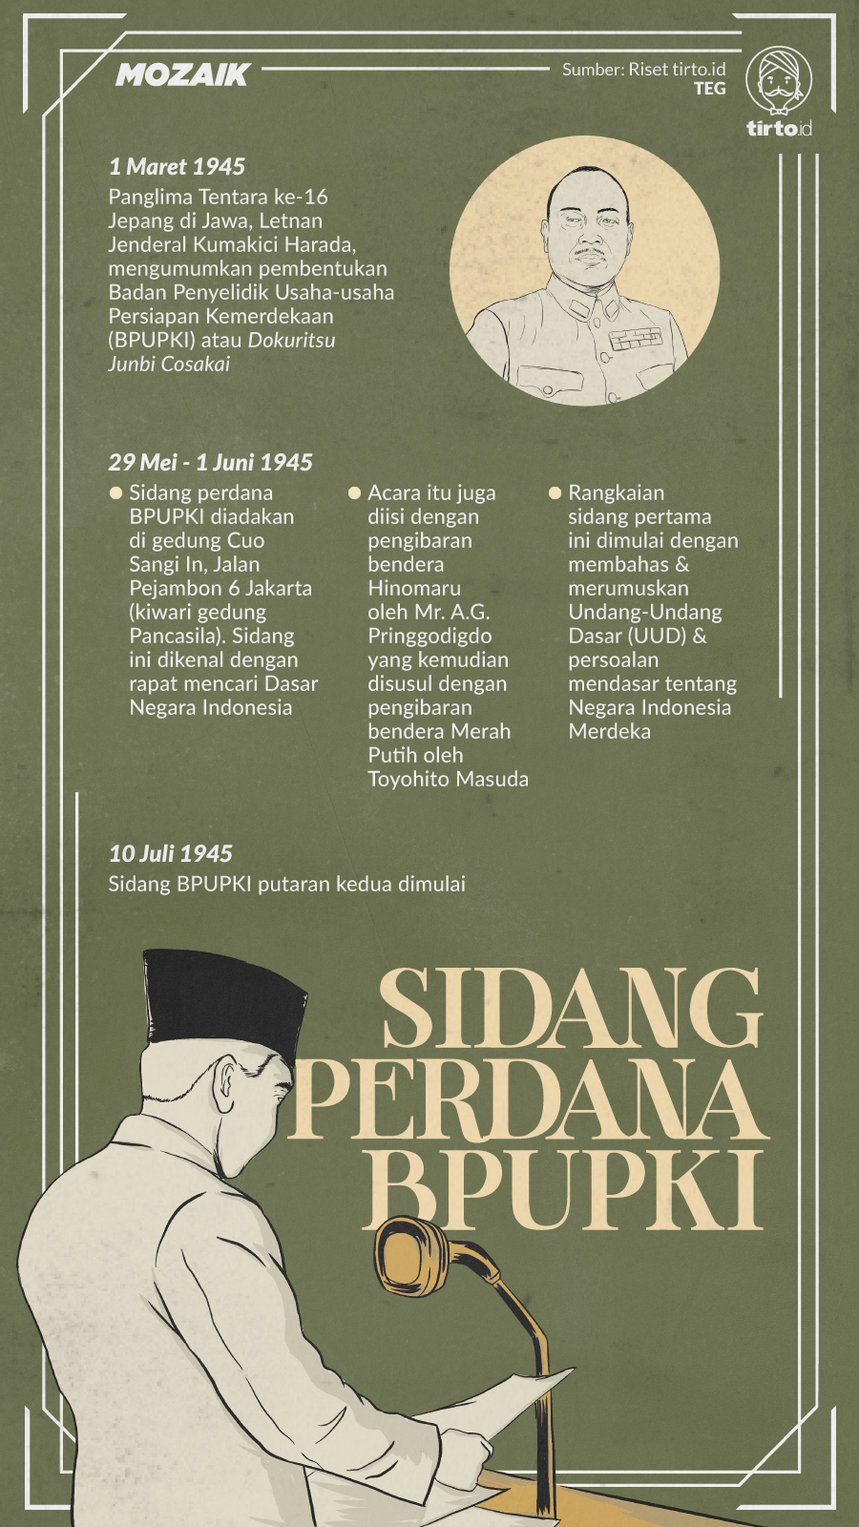 Sidang bpupki pertama membicarakan asas indonesia merdeka berlangsung pada tanggal